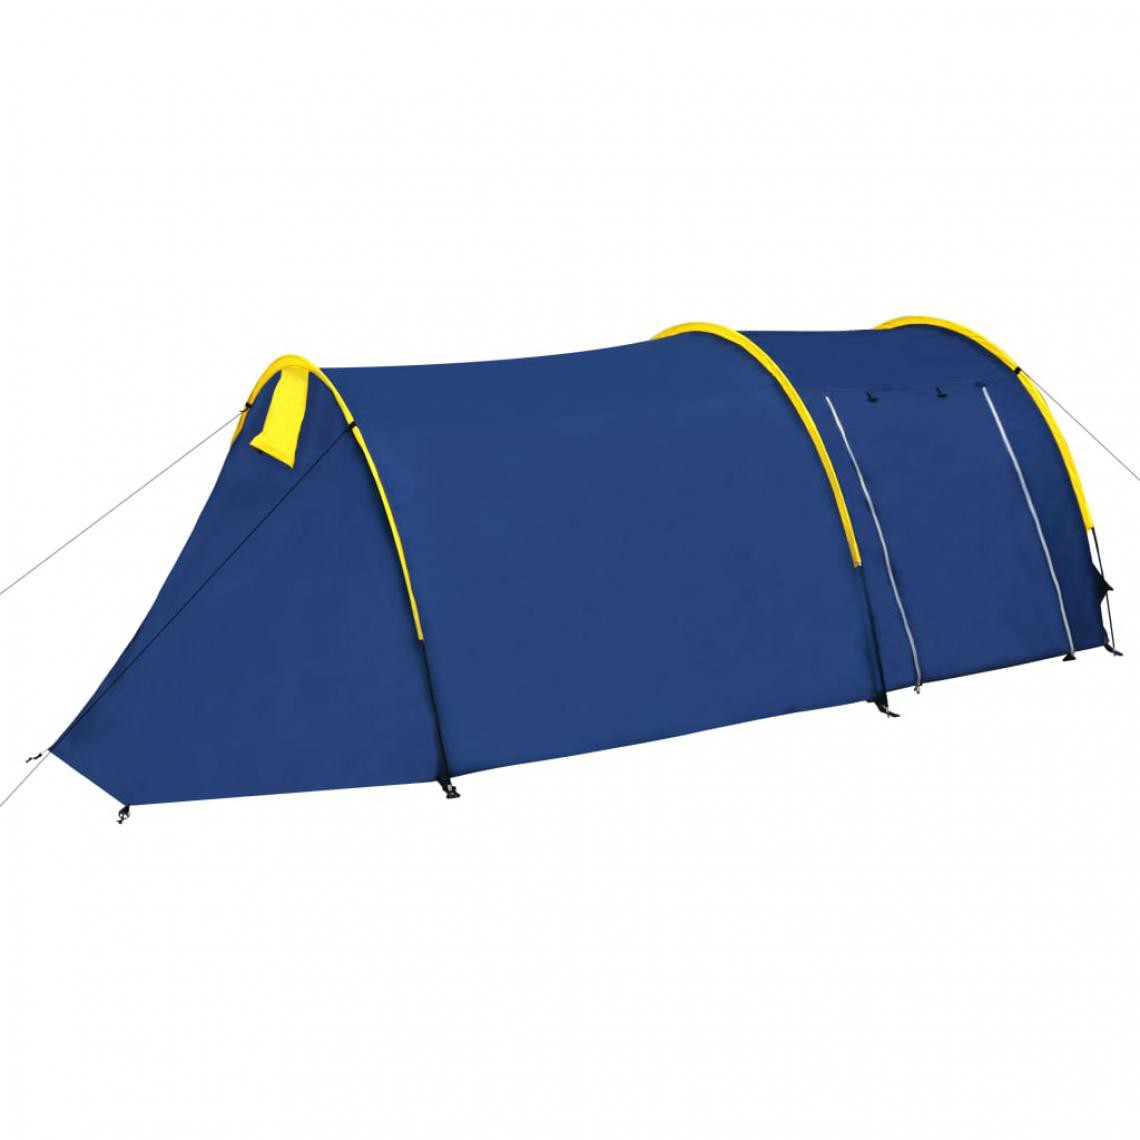 Icaverne - Moderne Camping et randonnée San José Tente de camping imperméable 4 Personnes Bleu marin/bleu clair - Pergolas et Tonnelles